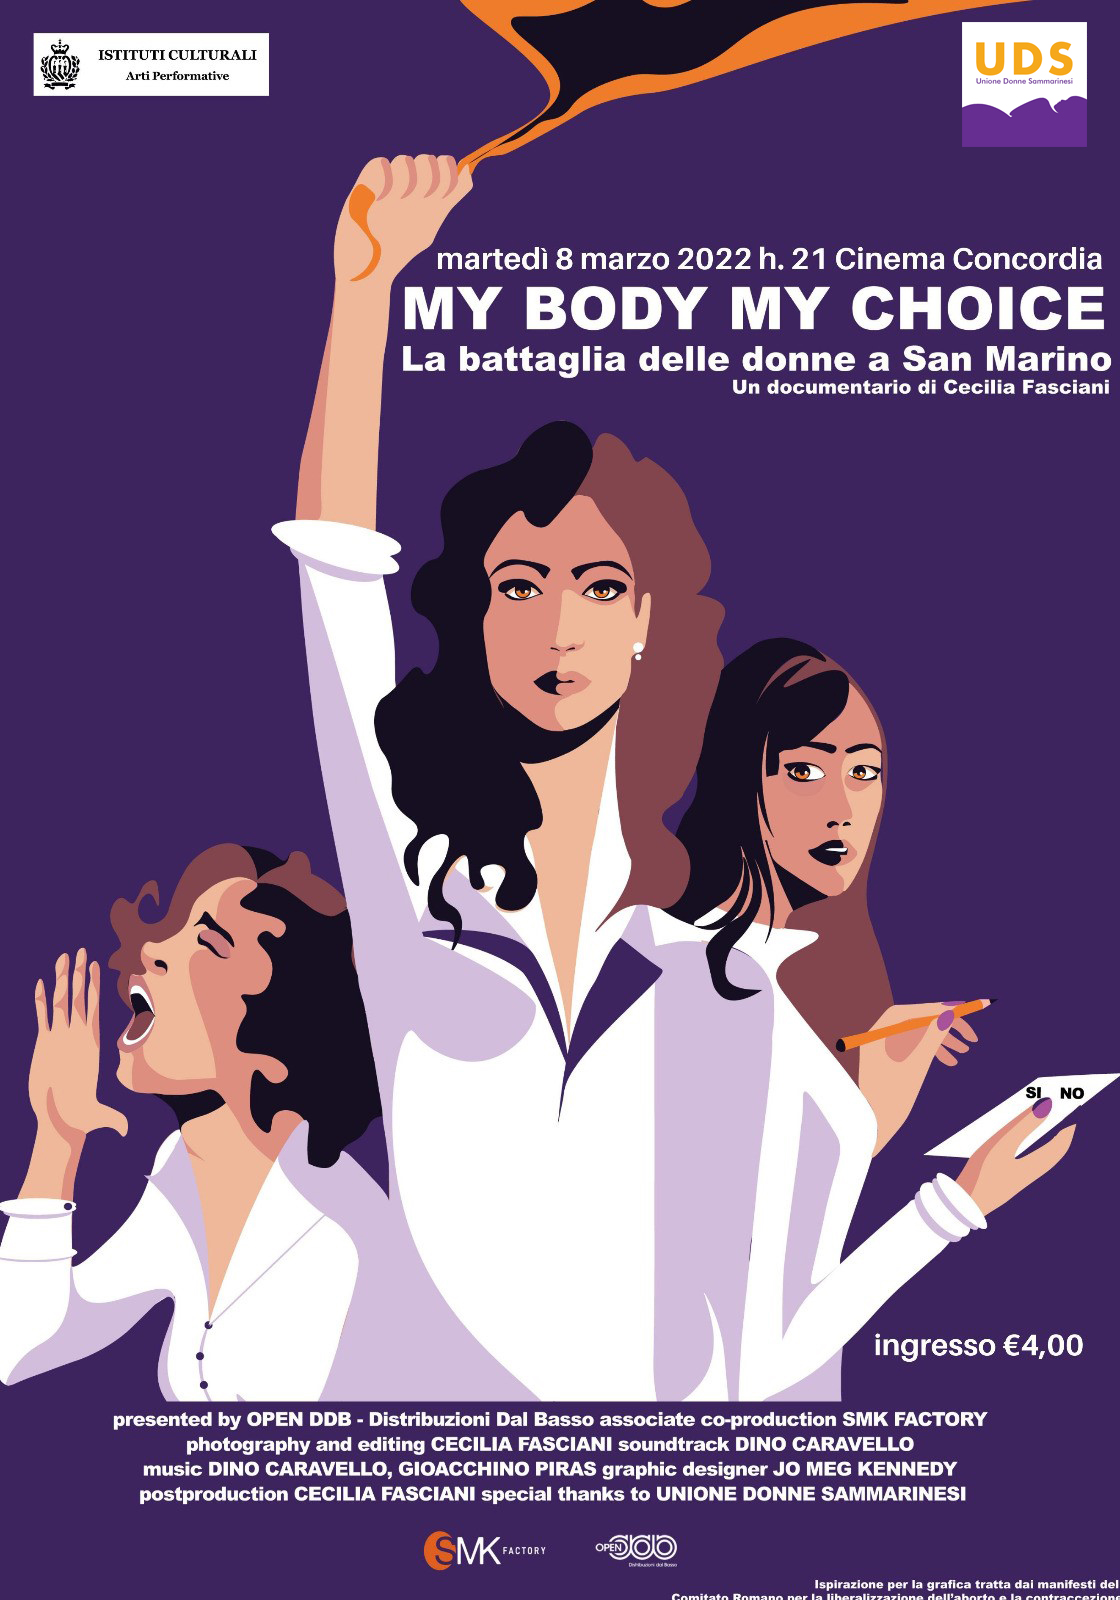 Un documentario sulle donne di San Marino ed il referendum sull’interruzione volontaria di gravidanza